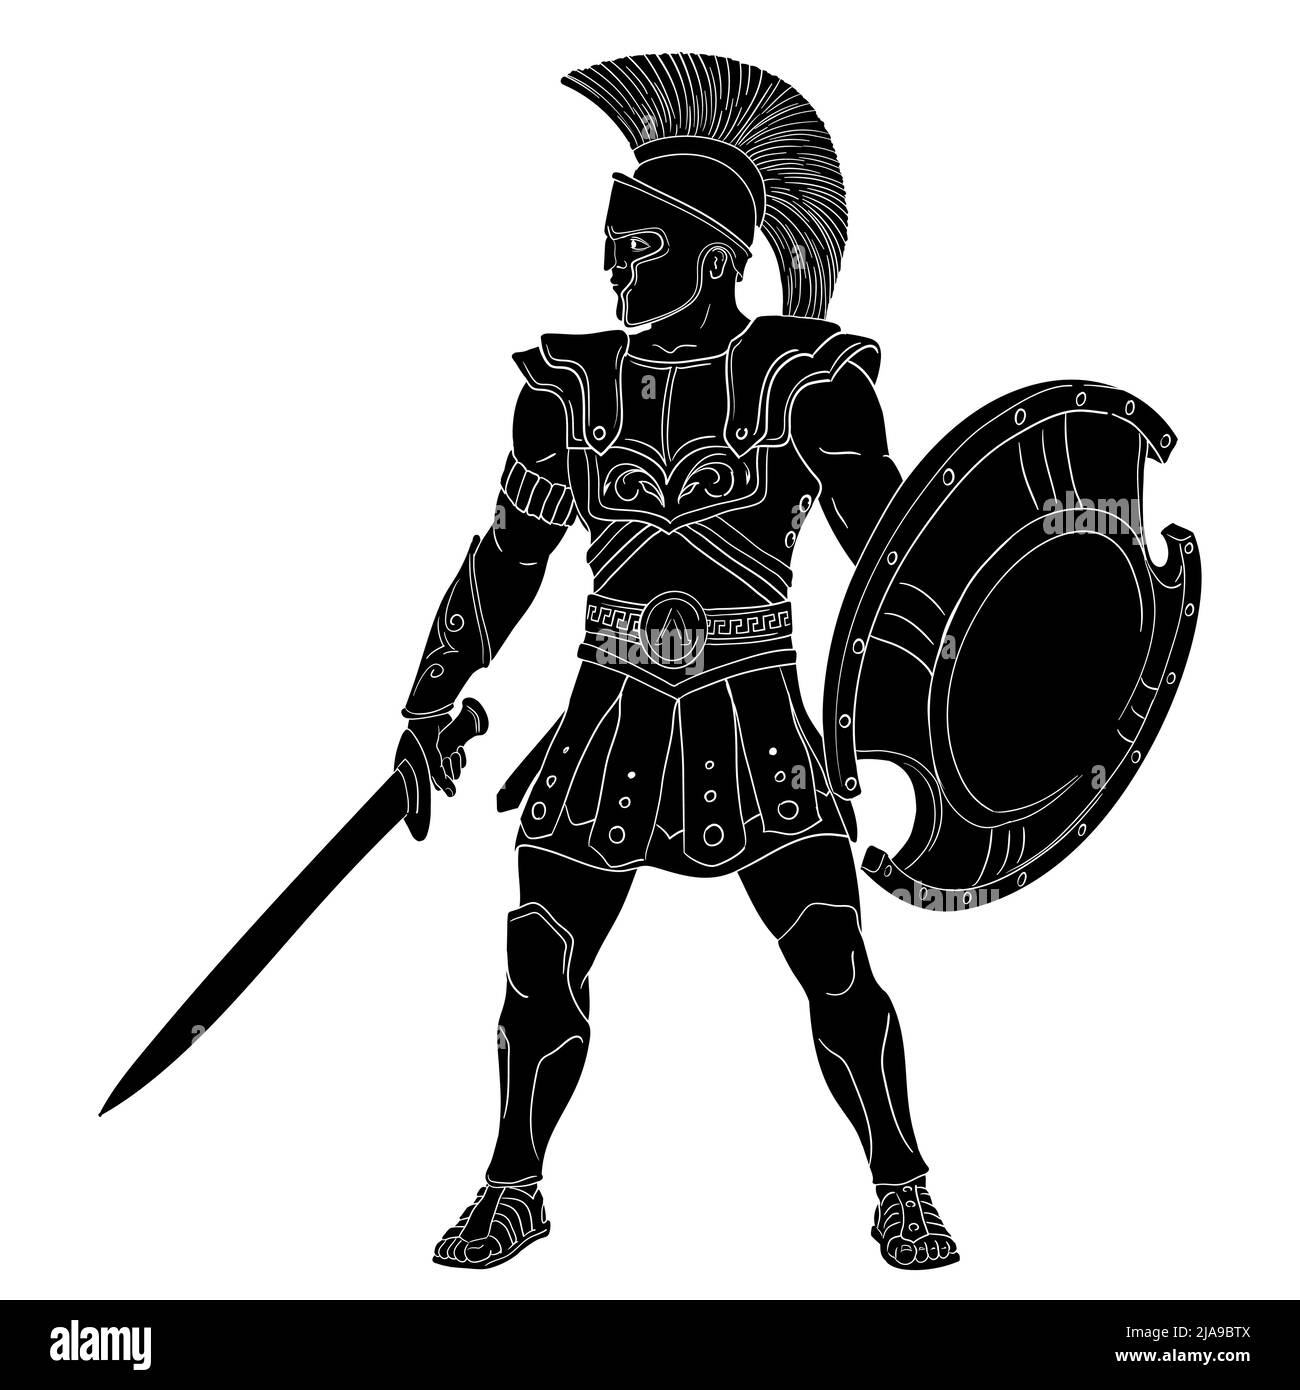 El antiguo guerrero griego con una espada y un escudo en sus manos está listo para atacar. Ilustración vectorial aislada sobre fondo blanco. Ilustración del Vector